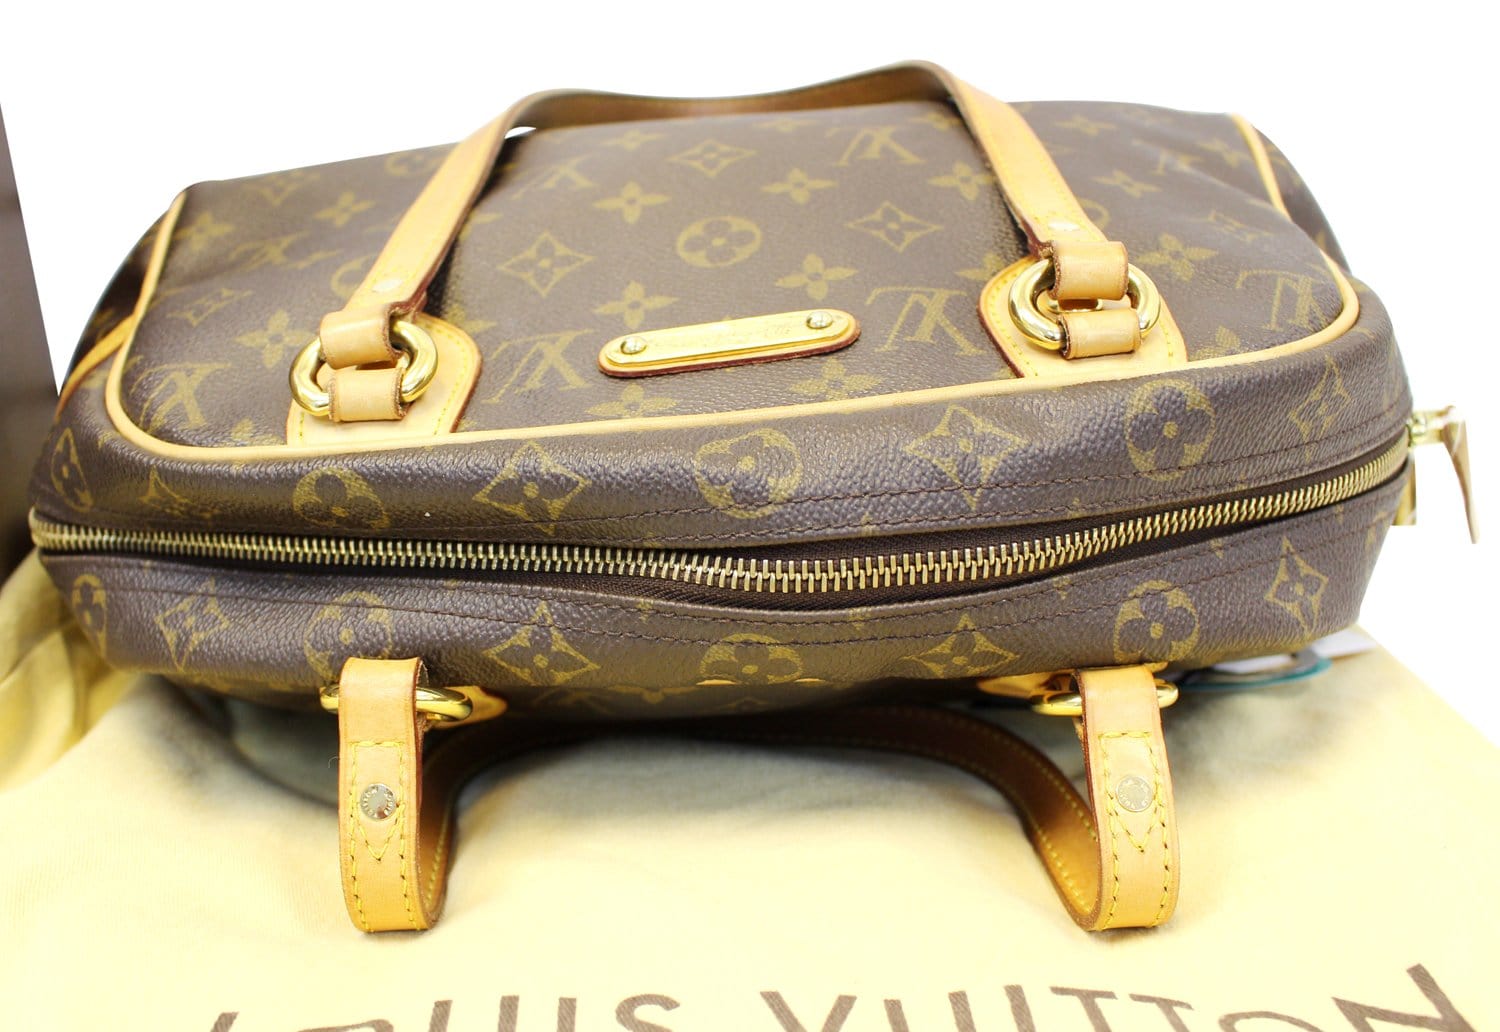 Vintage Louis Vuitton Monogram Montorgueil Handbag SP0078 030123